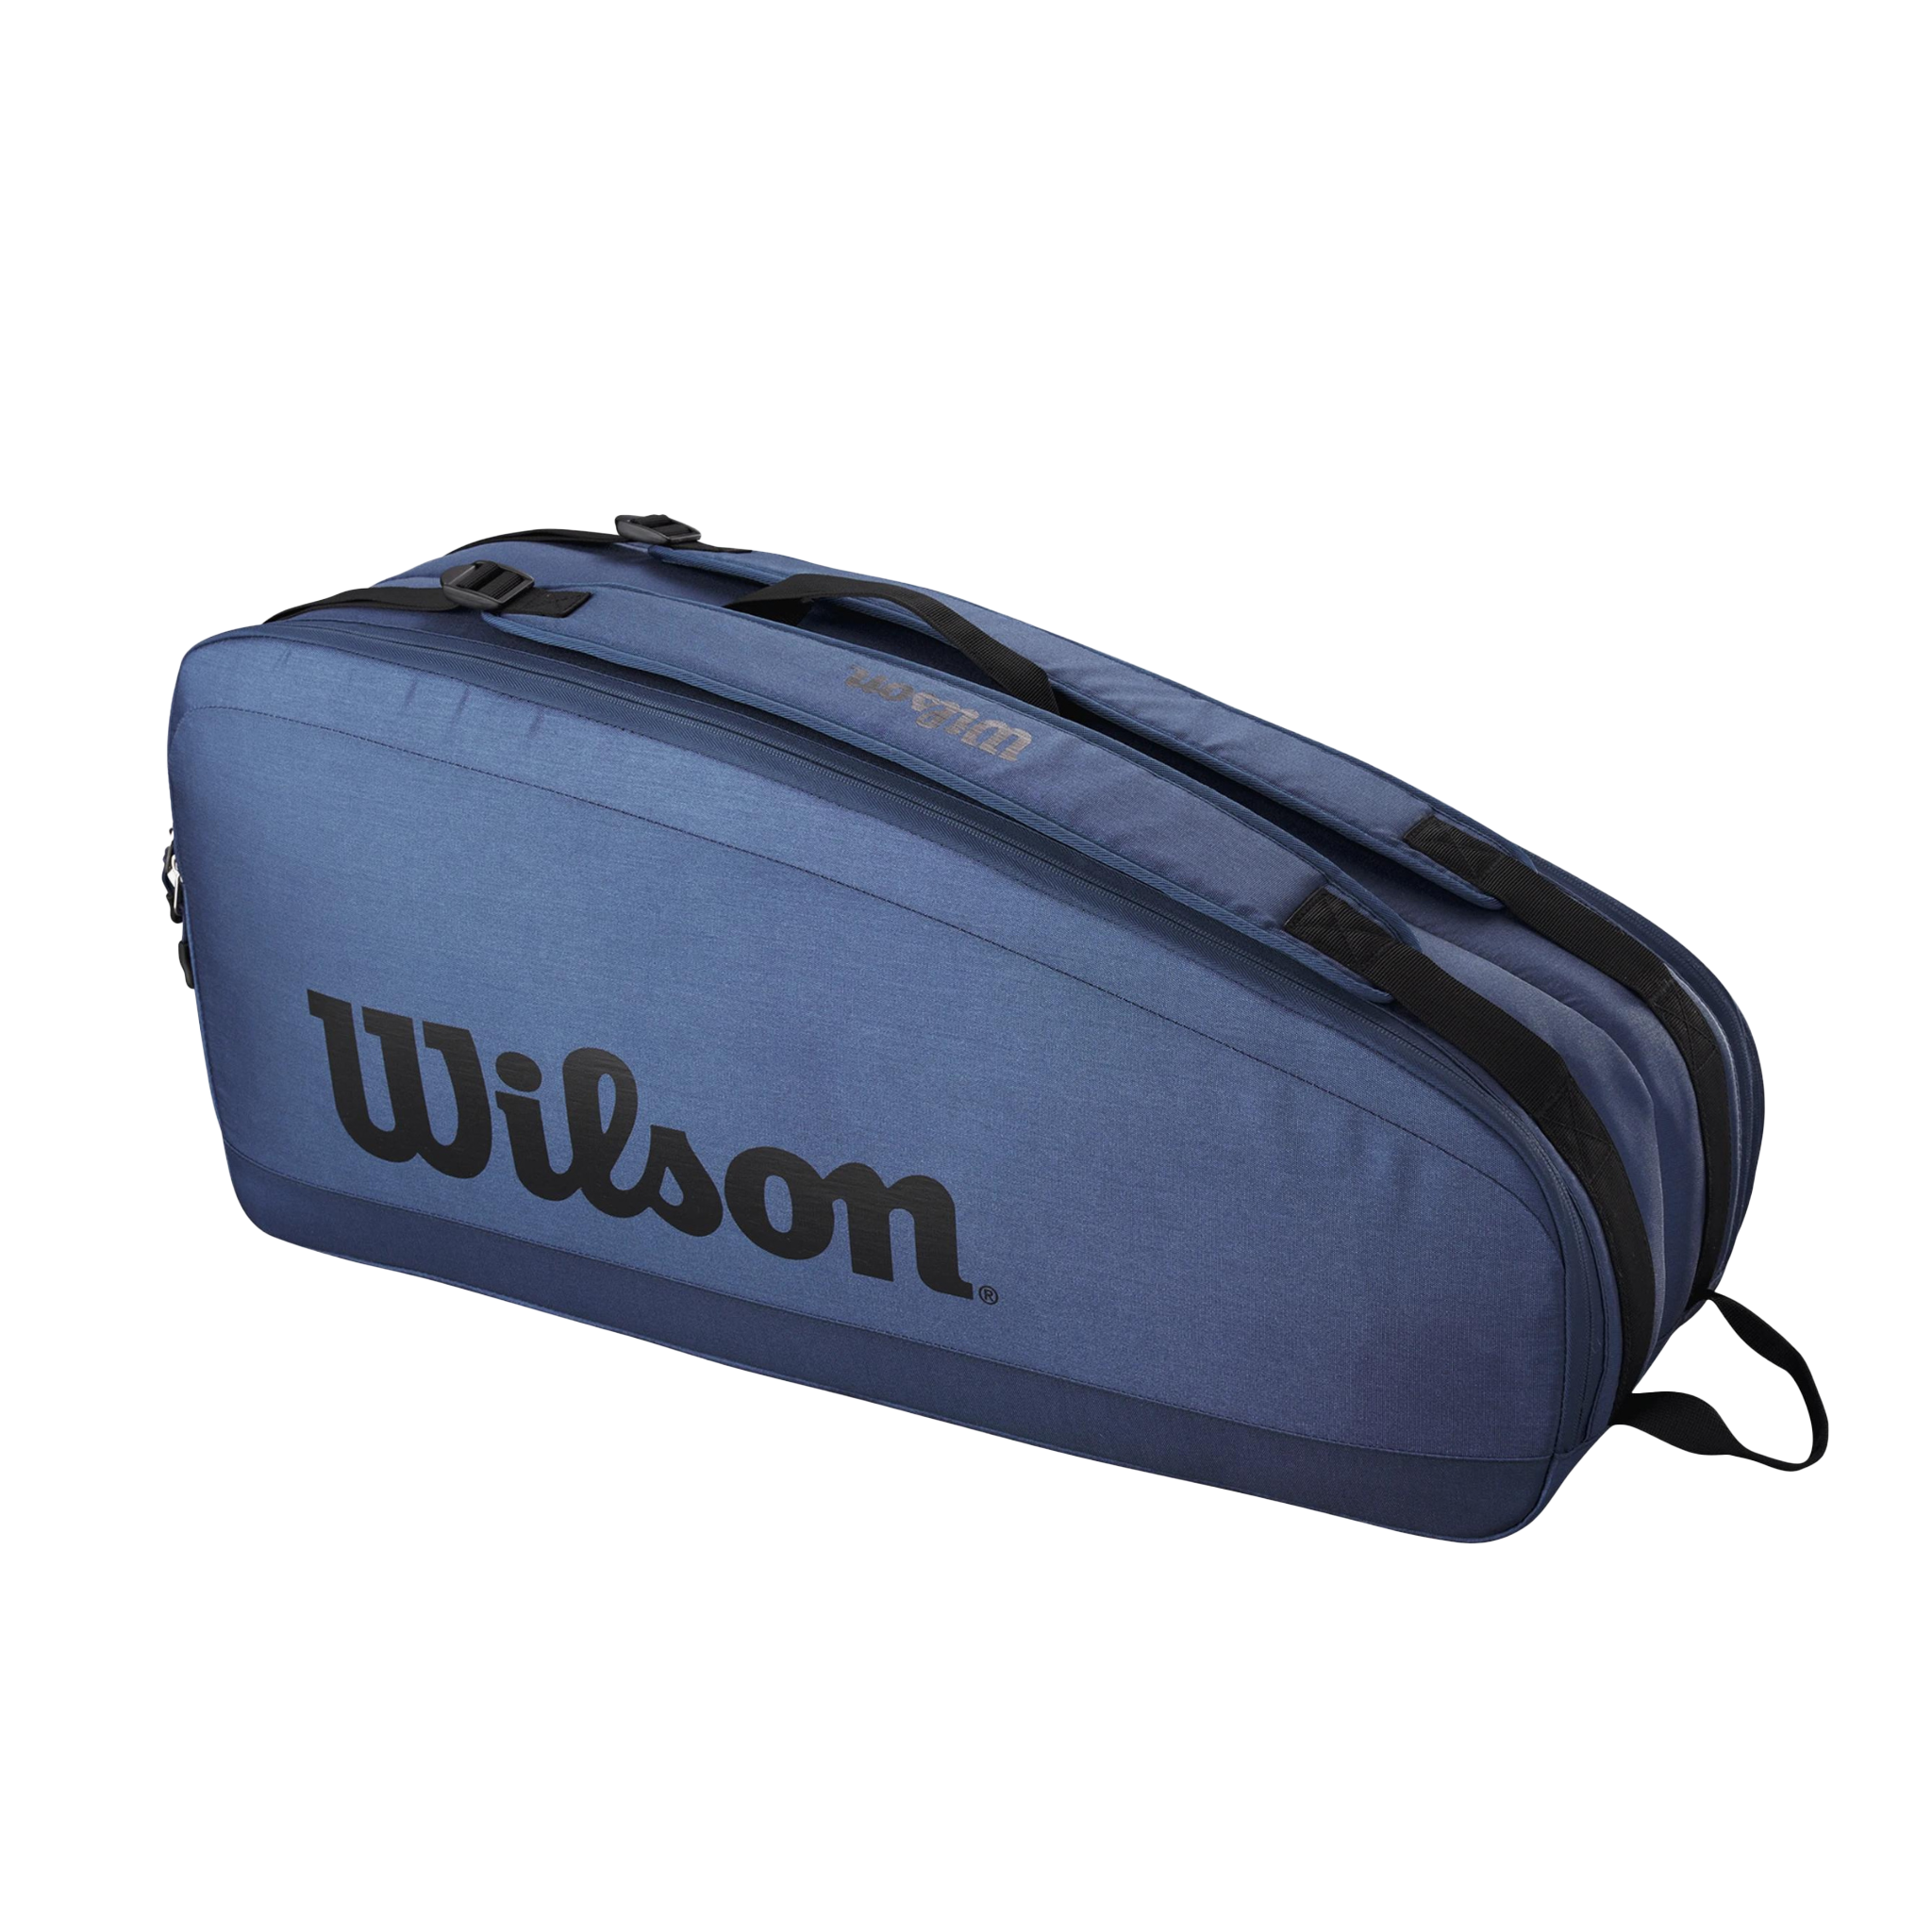 Wilson Ultra V4 6 racket bag